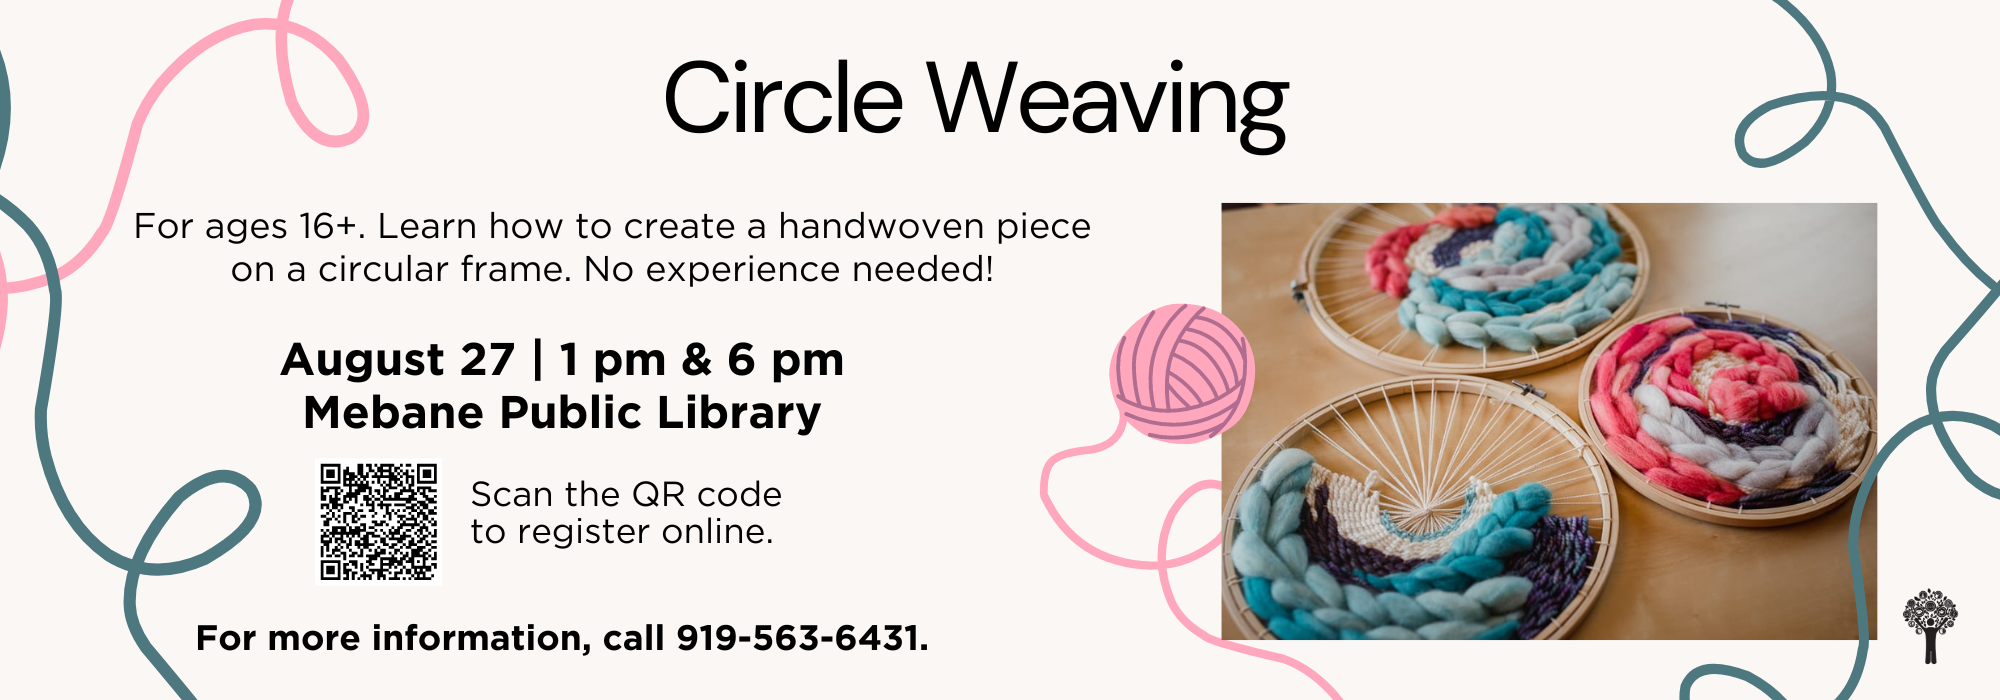 8.27 at 1 & 6 pm - Circle Weaving Class at Mebane